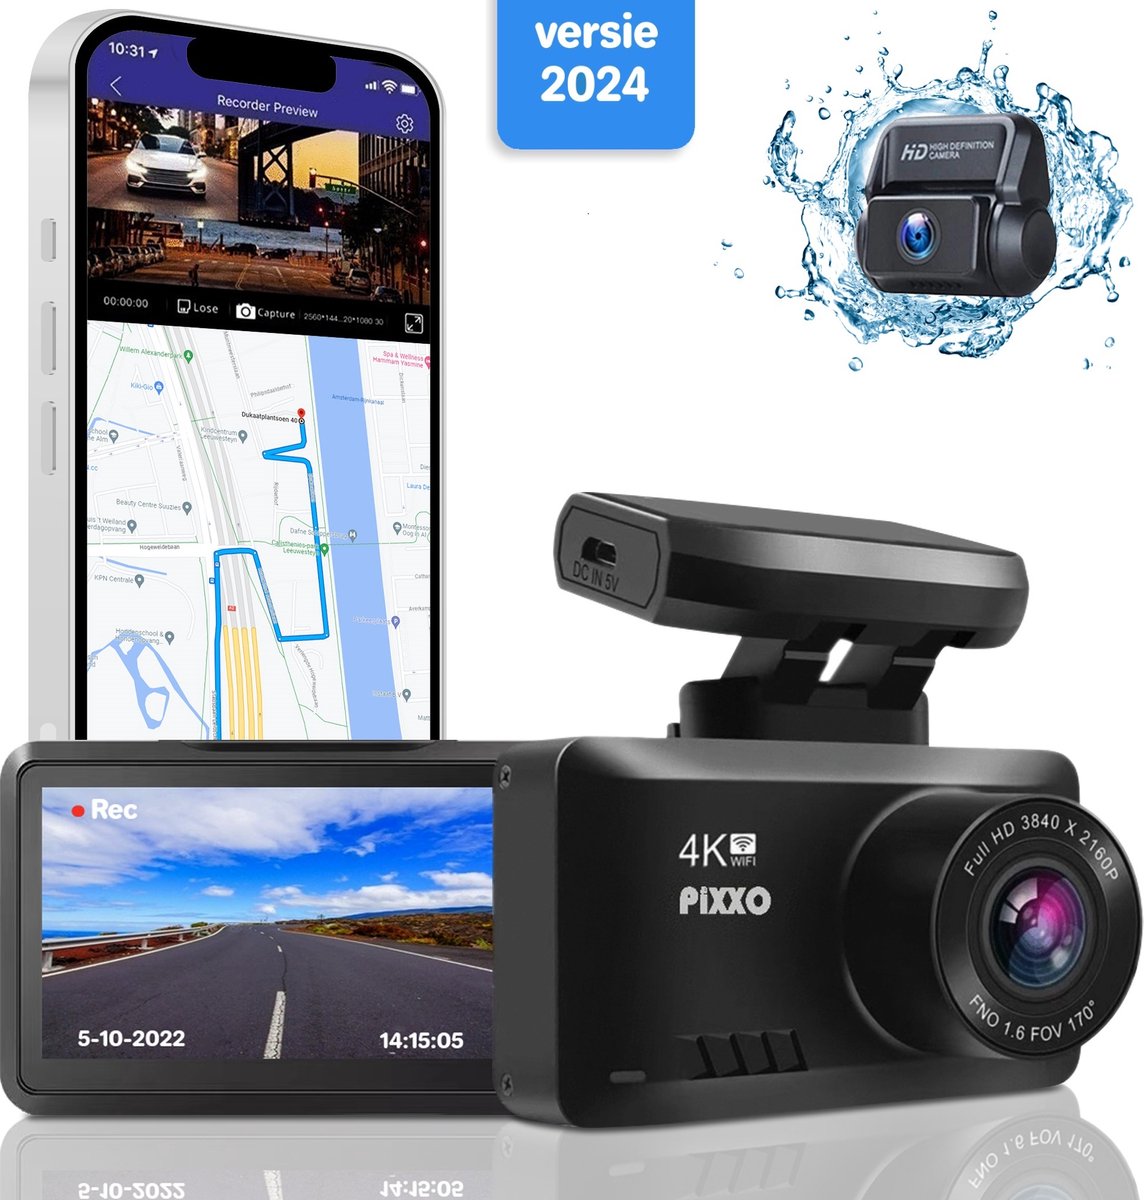 Caméra 170 Degrés Dash Cam 4K WiFi GPS Range Tour + Carte Mémoire 128 Go -  Double Lentille, Full HD 1080P + 1080P, Voiture DVR, Enregistreur Vidéo,  Capteur Sony, Vision Nocturne, WDR Double, voiture i